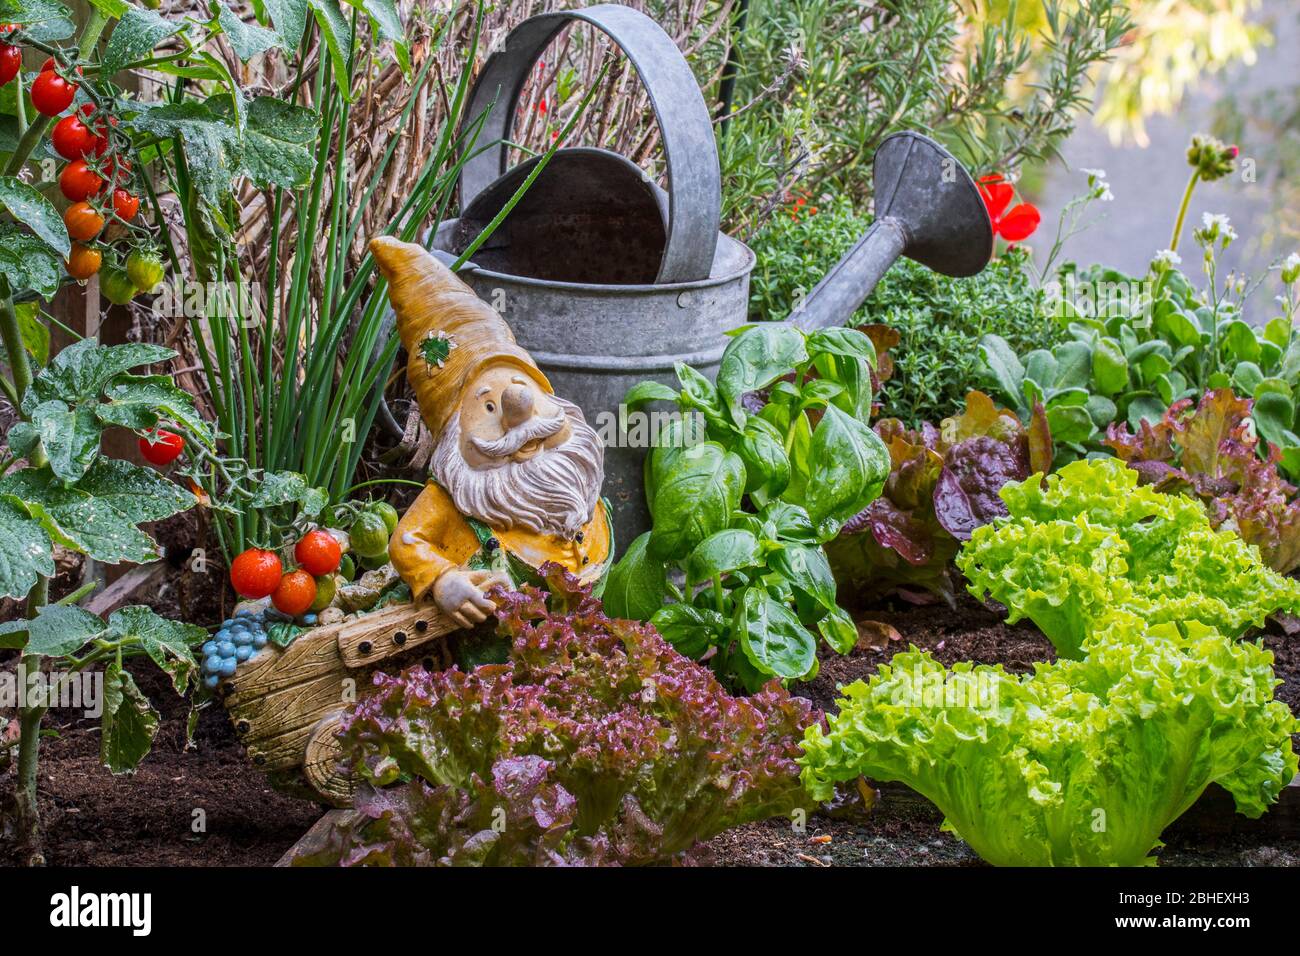 Figurine décorative de gnome de jardin avec brouette parmi différentes espèces de laitue, herbes, tomates et légumes dans une boîte en bois de jardin de pied carré Banque D'Images